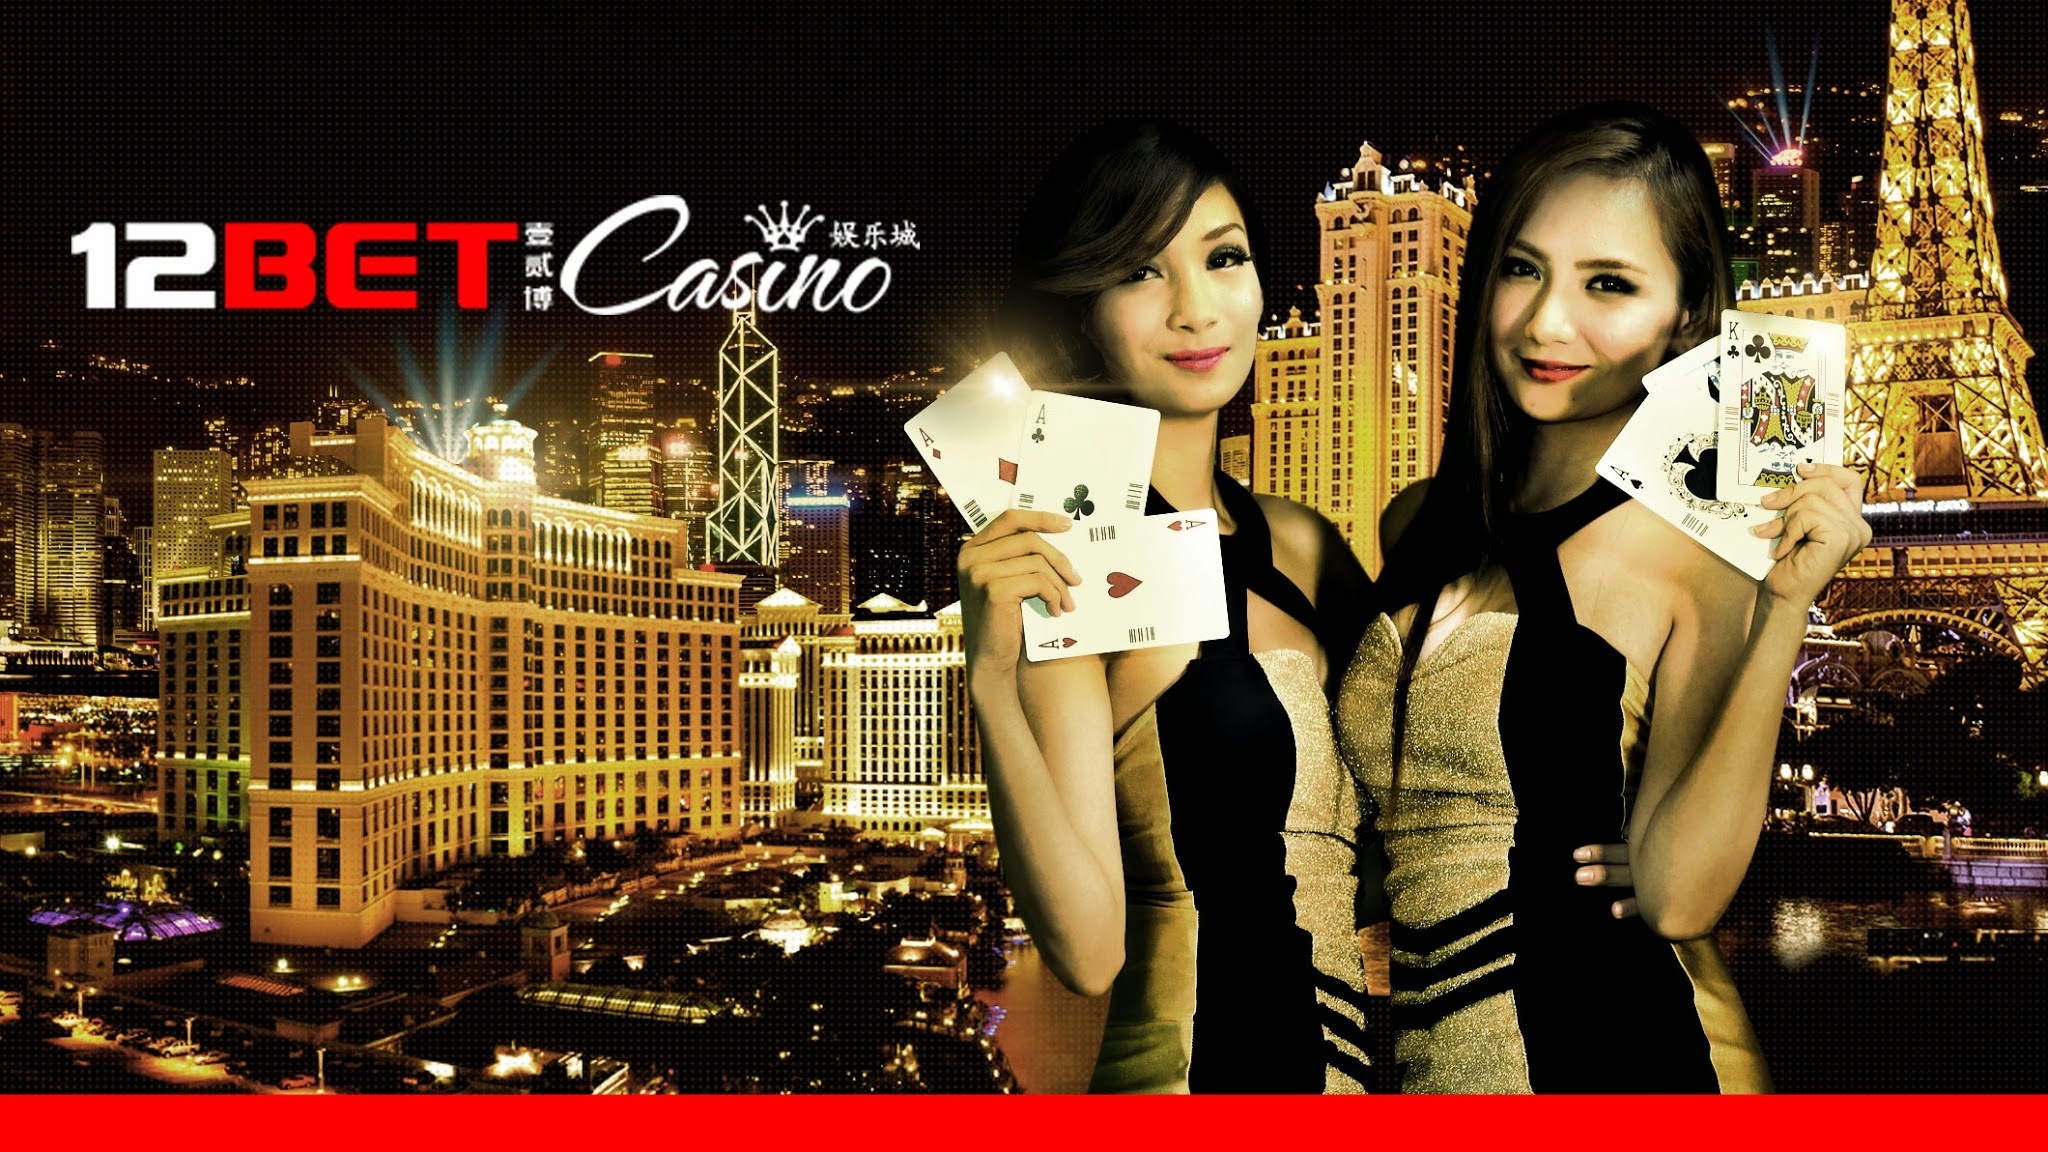 KeyToCasino Updates: 12Bet Casino